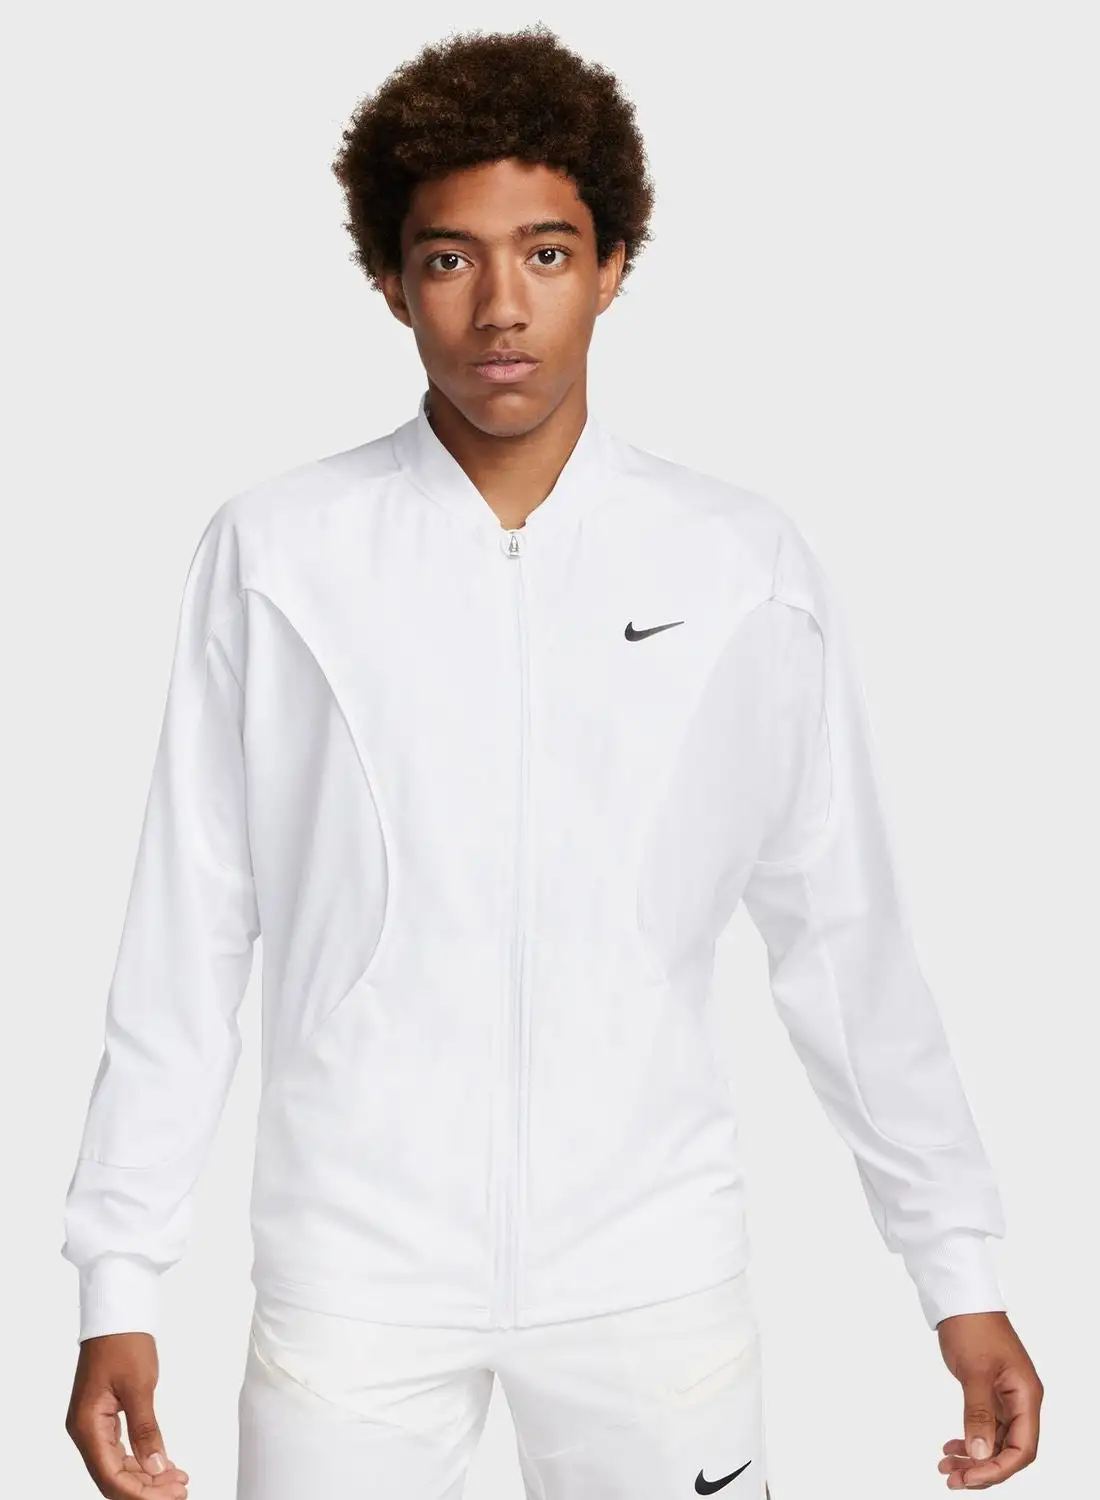 Nike Dri-Fit Advantage Jacket